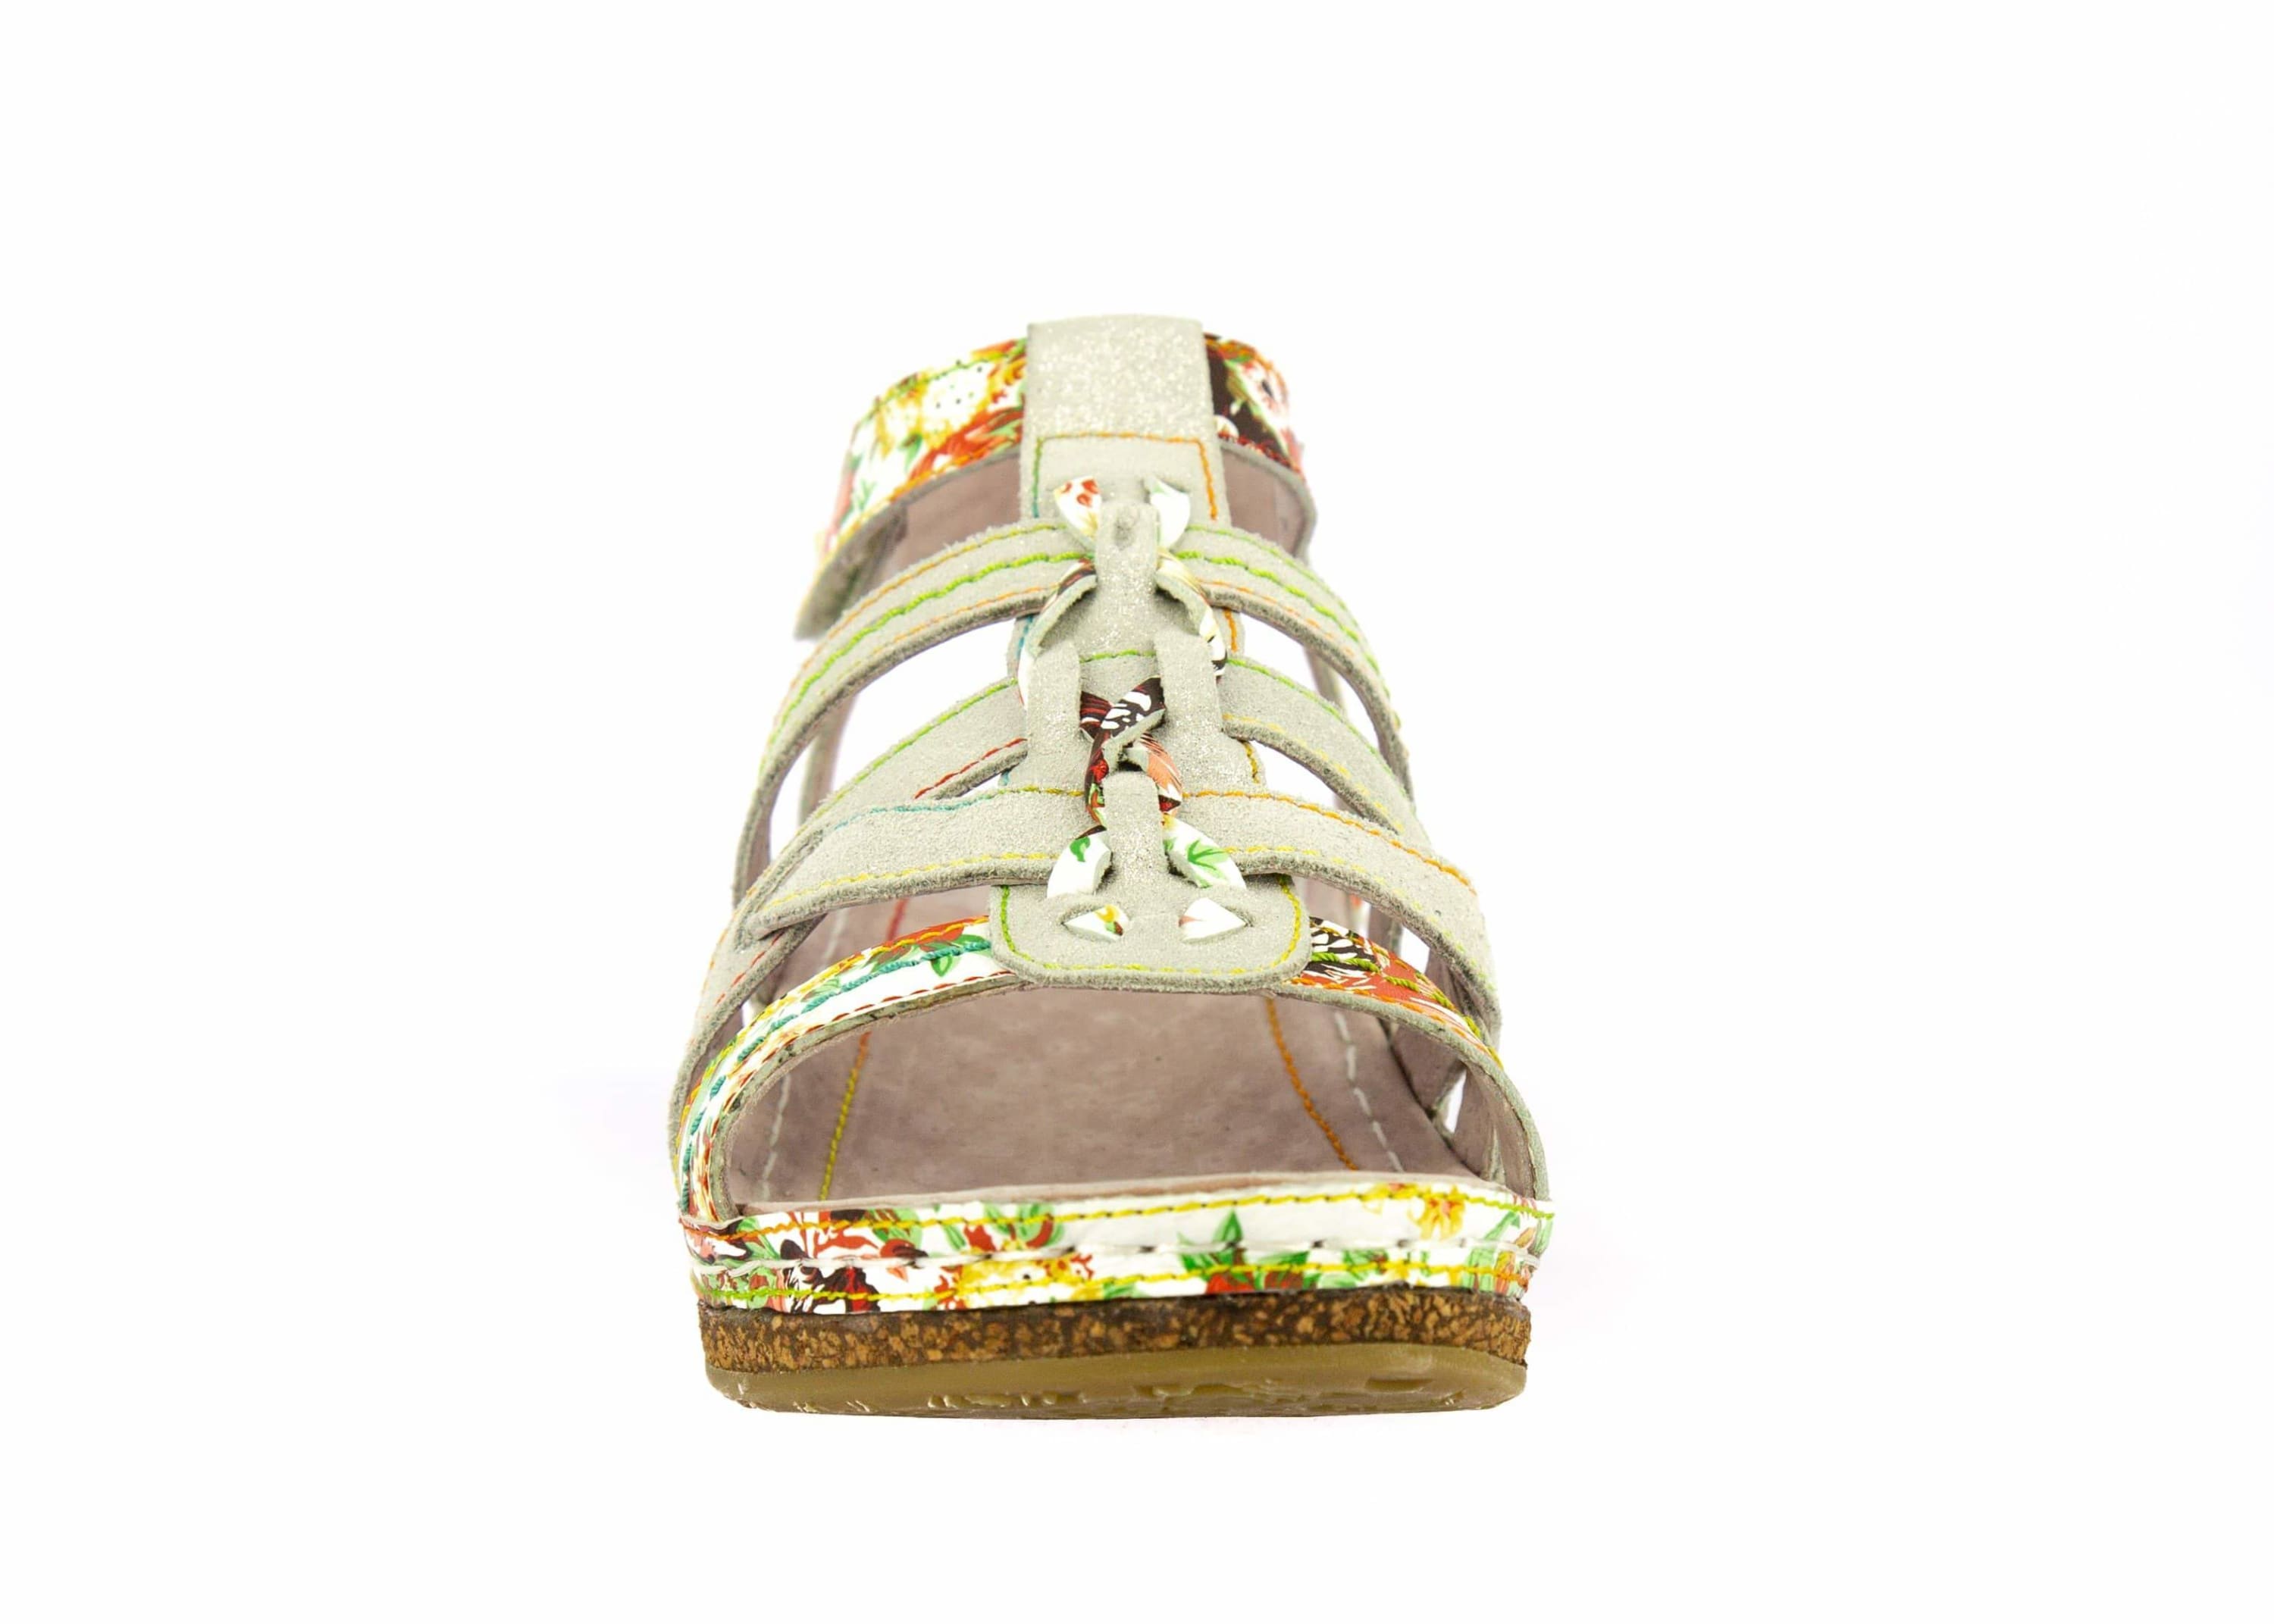 Schuh FACRAHO04 - Sandale